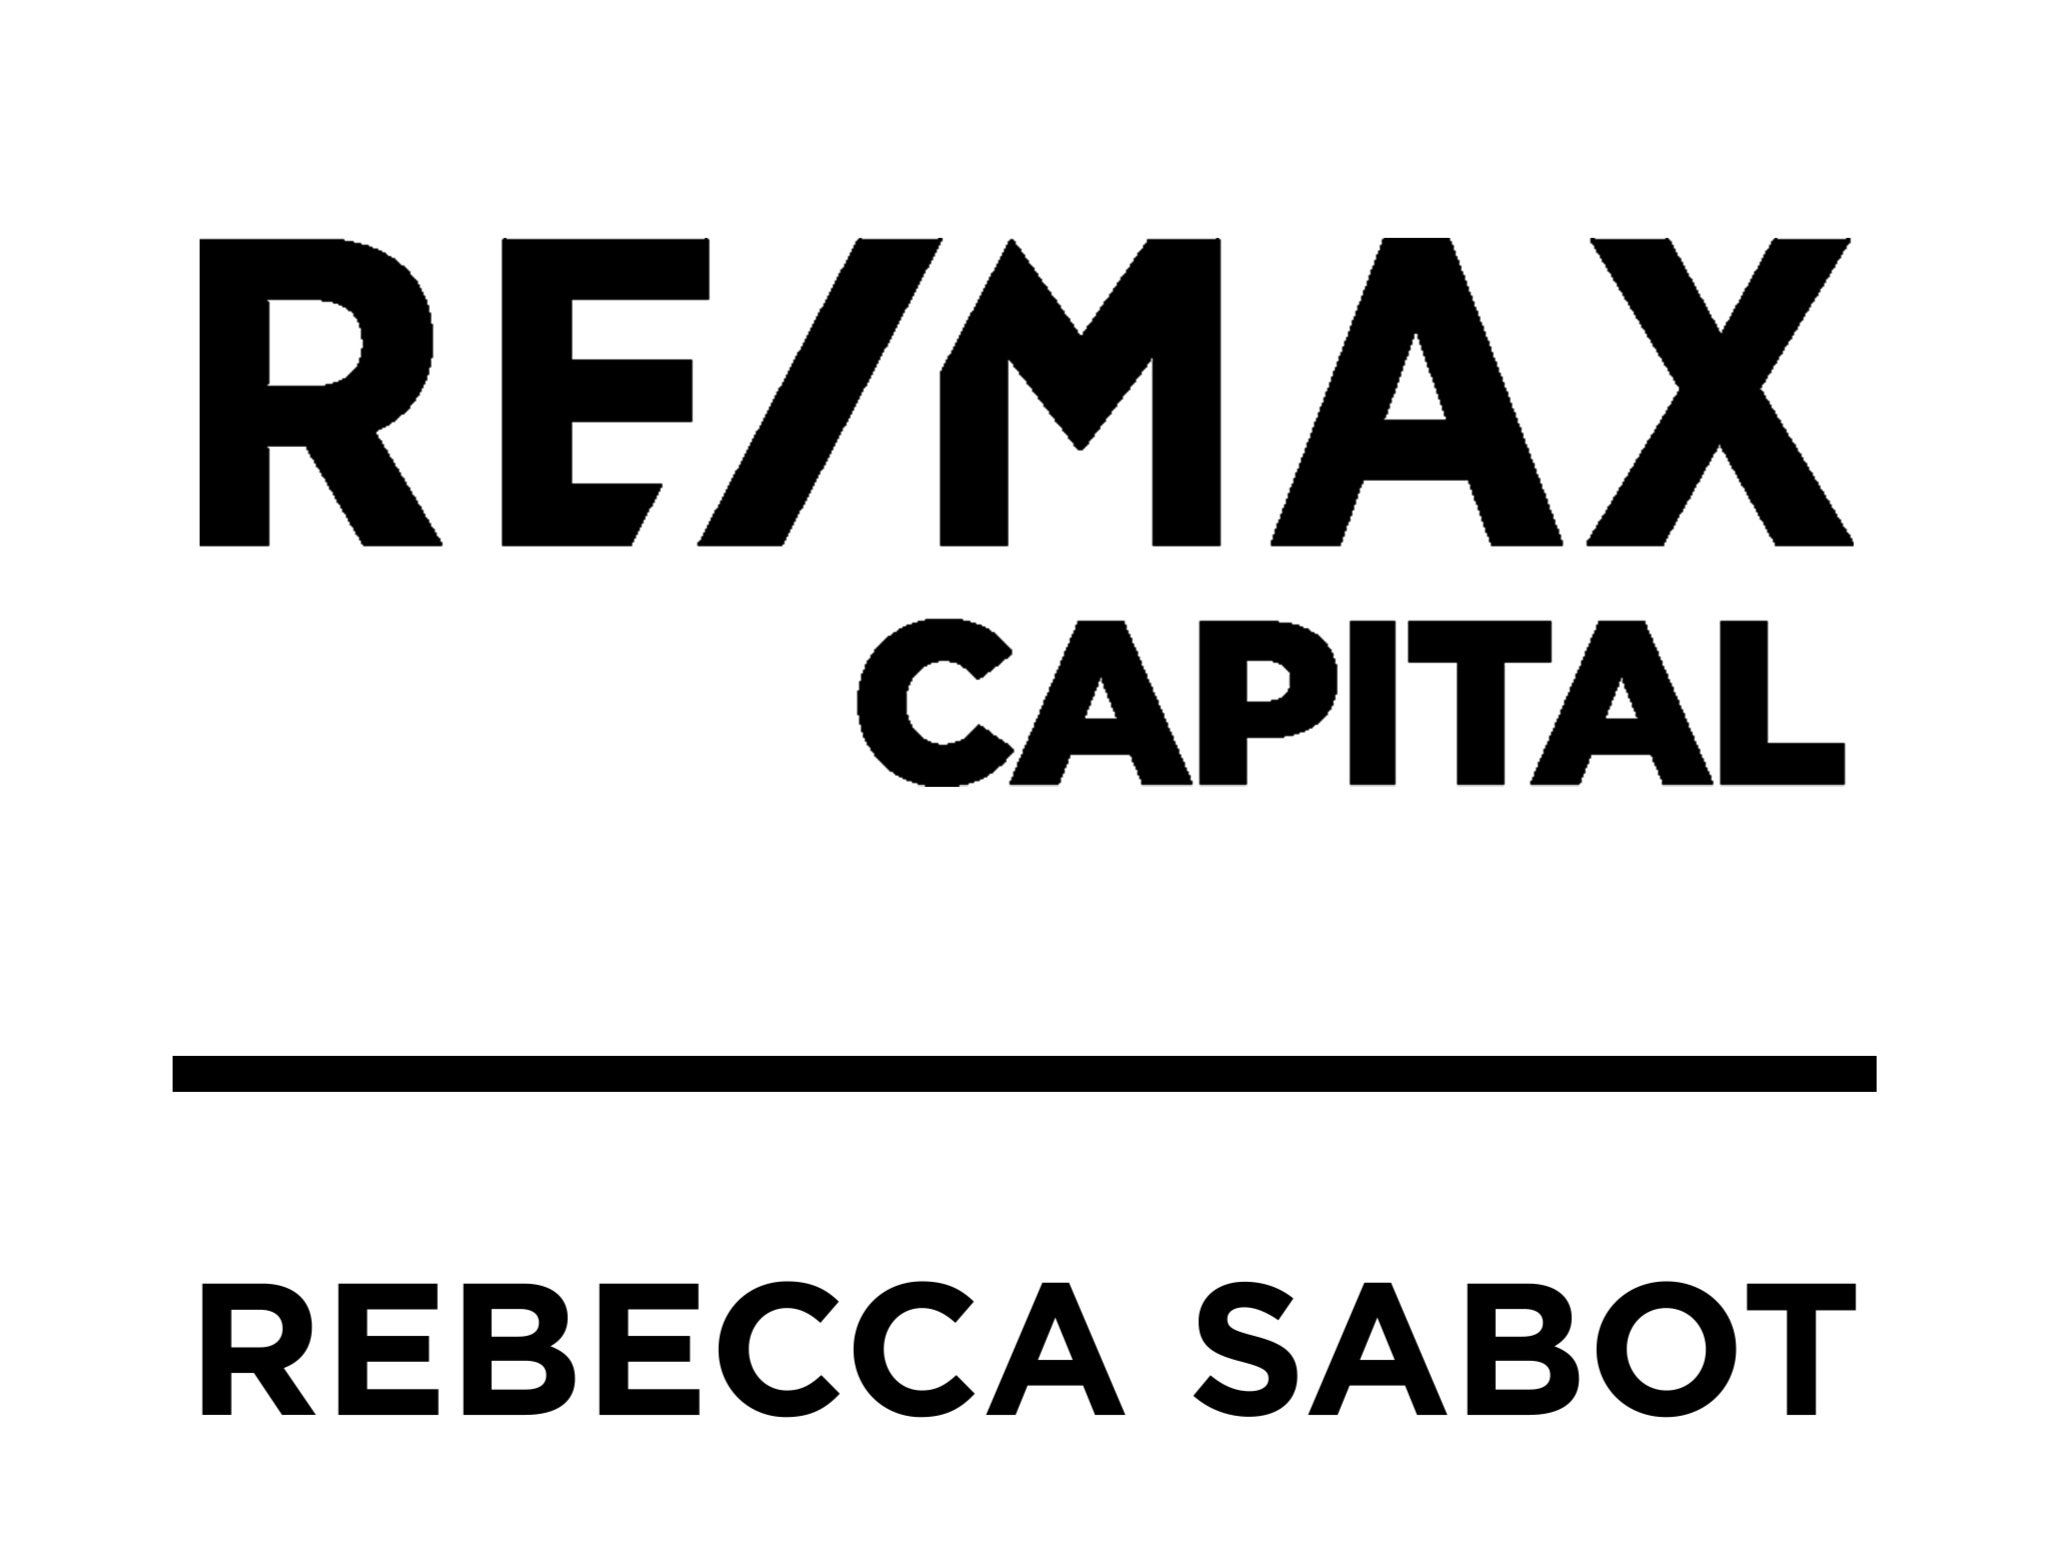 Rebecca Sabot Bismarck Real Estate Agent and Realtor